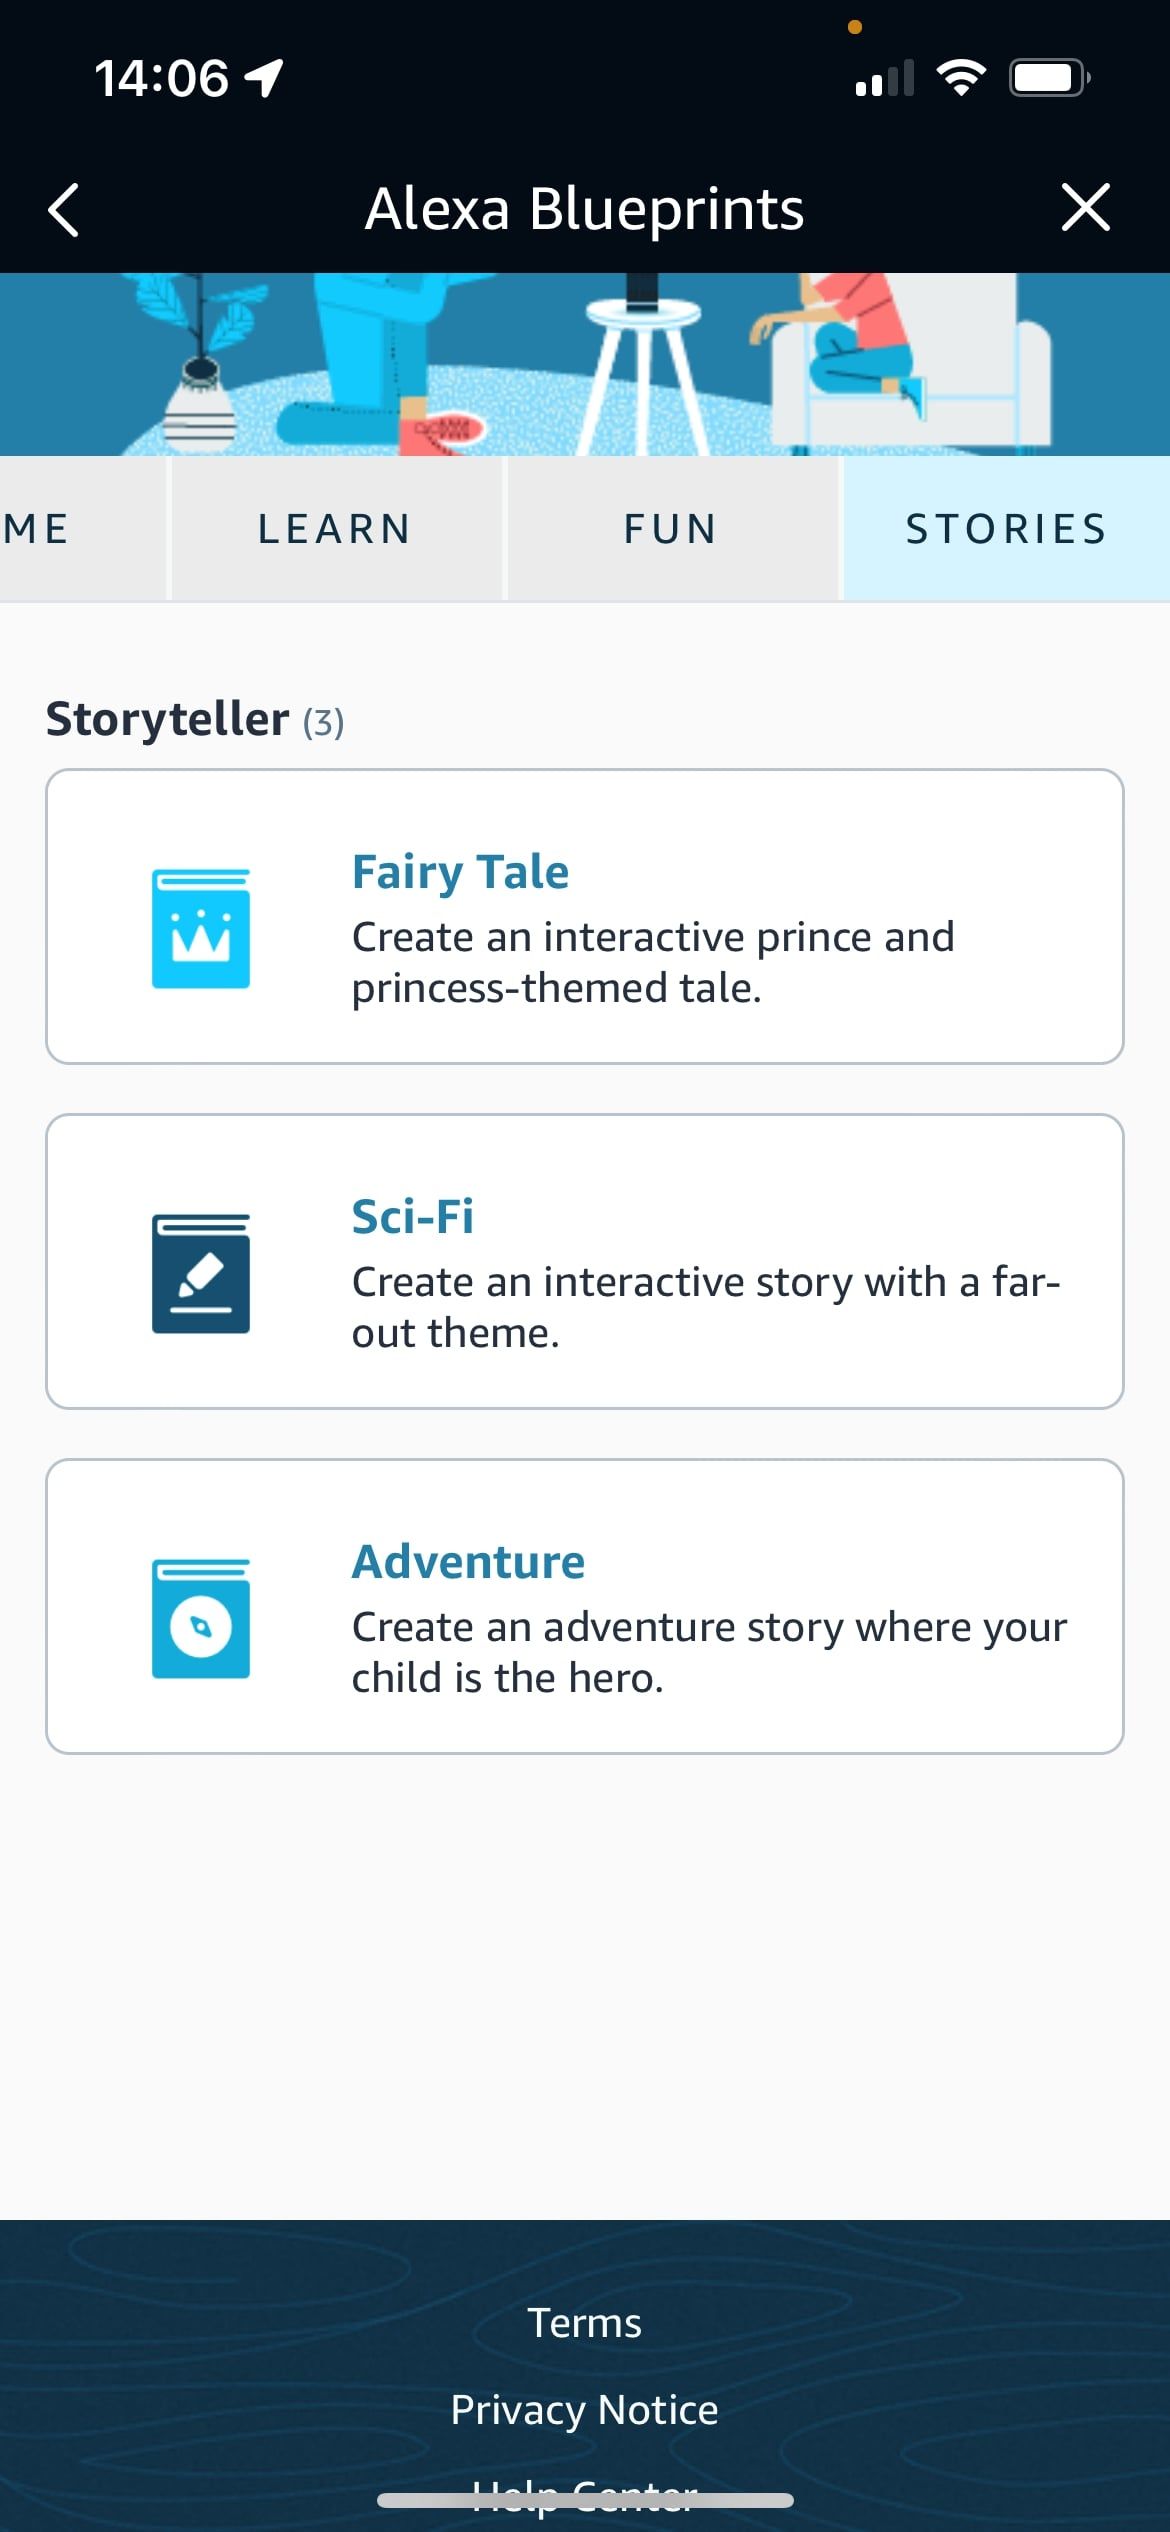 Alexa Stories Blueprints page